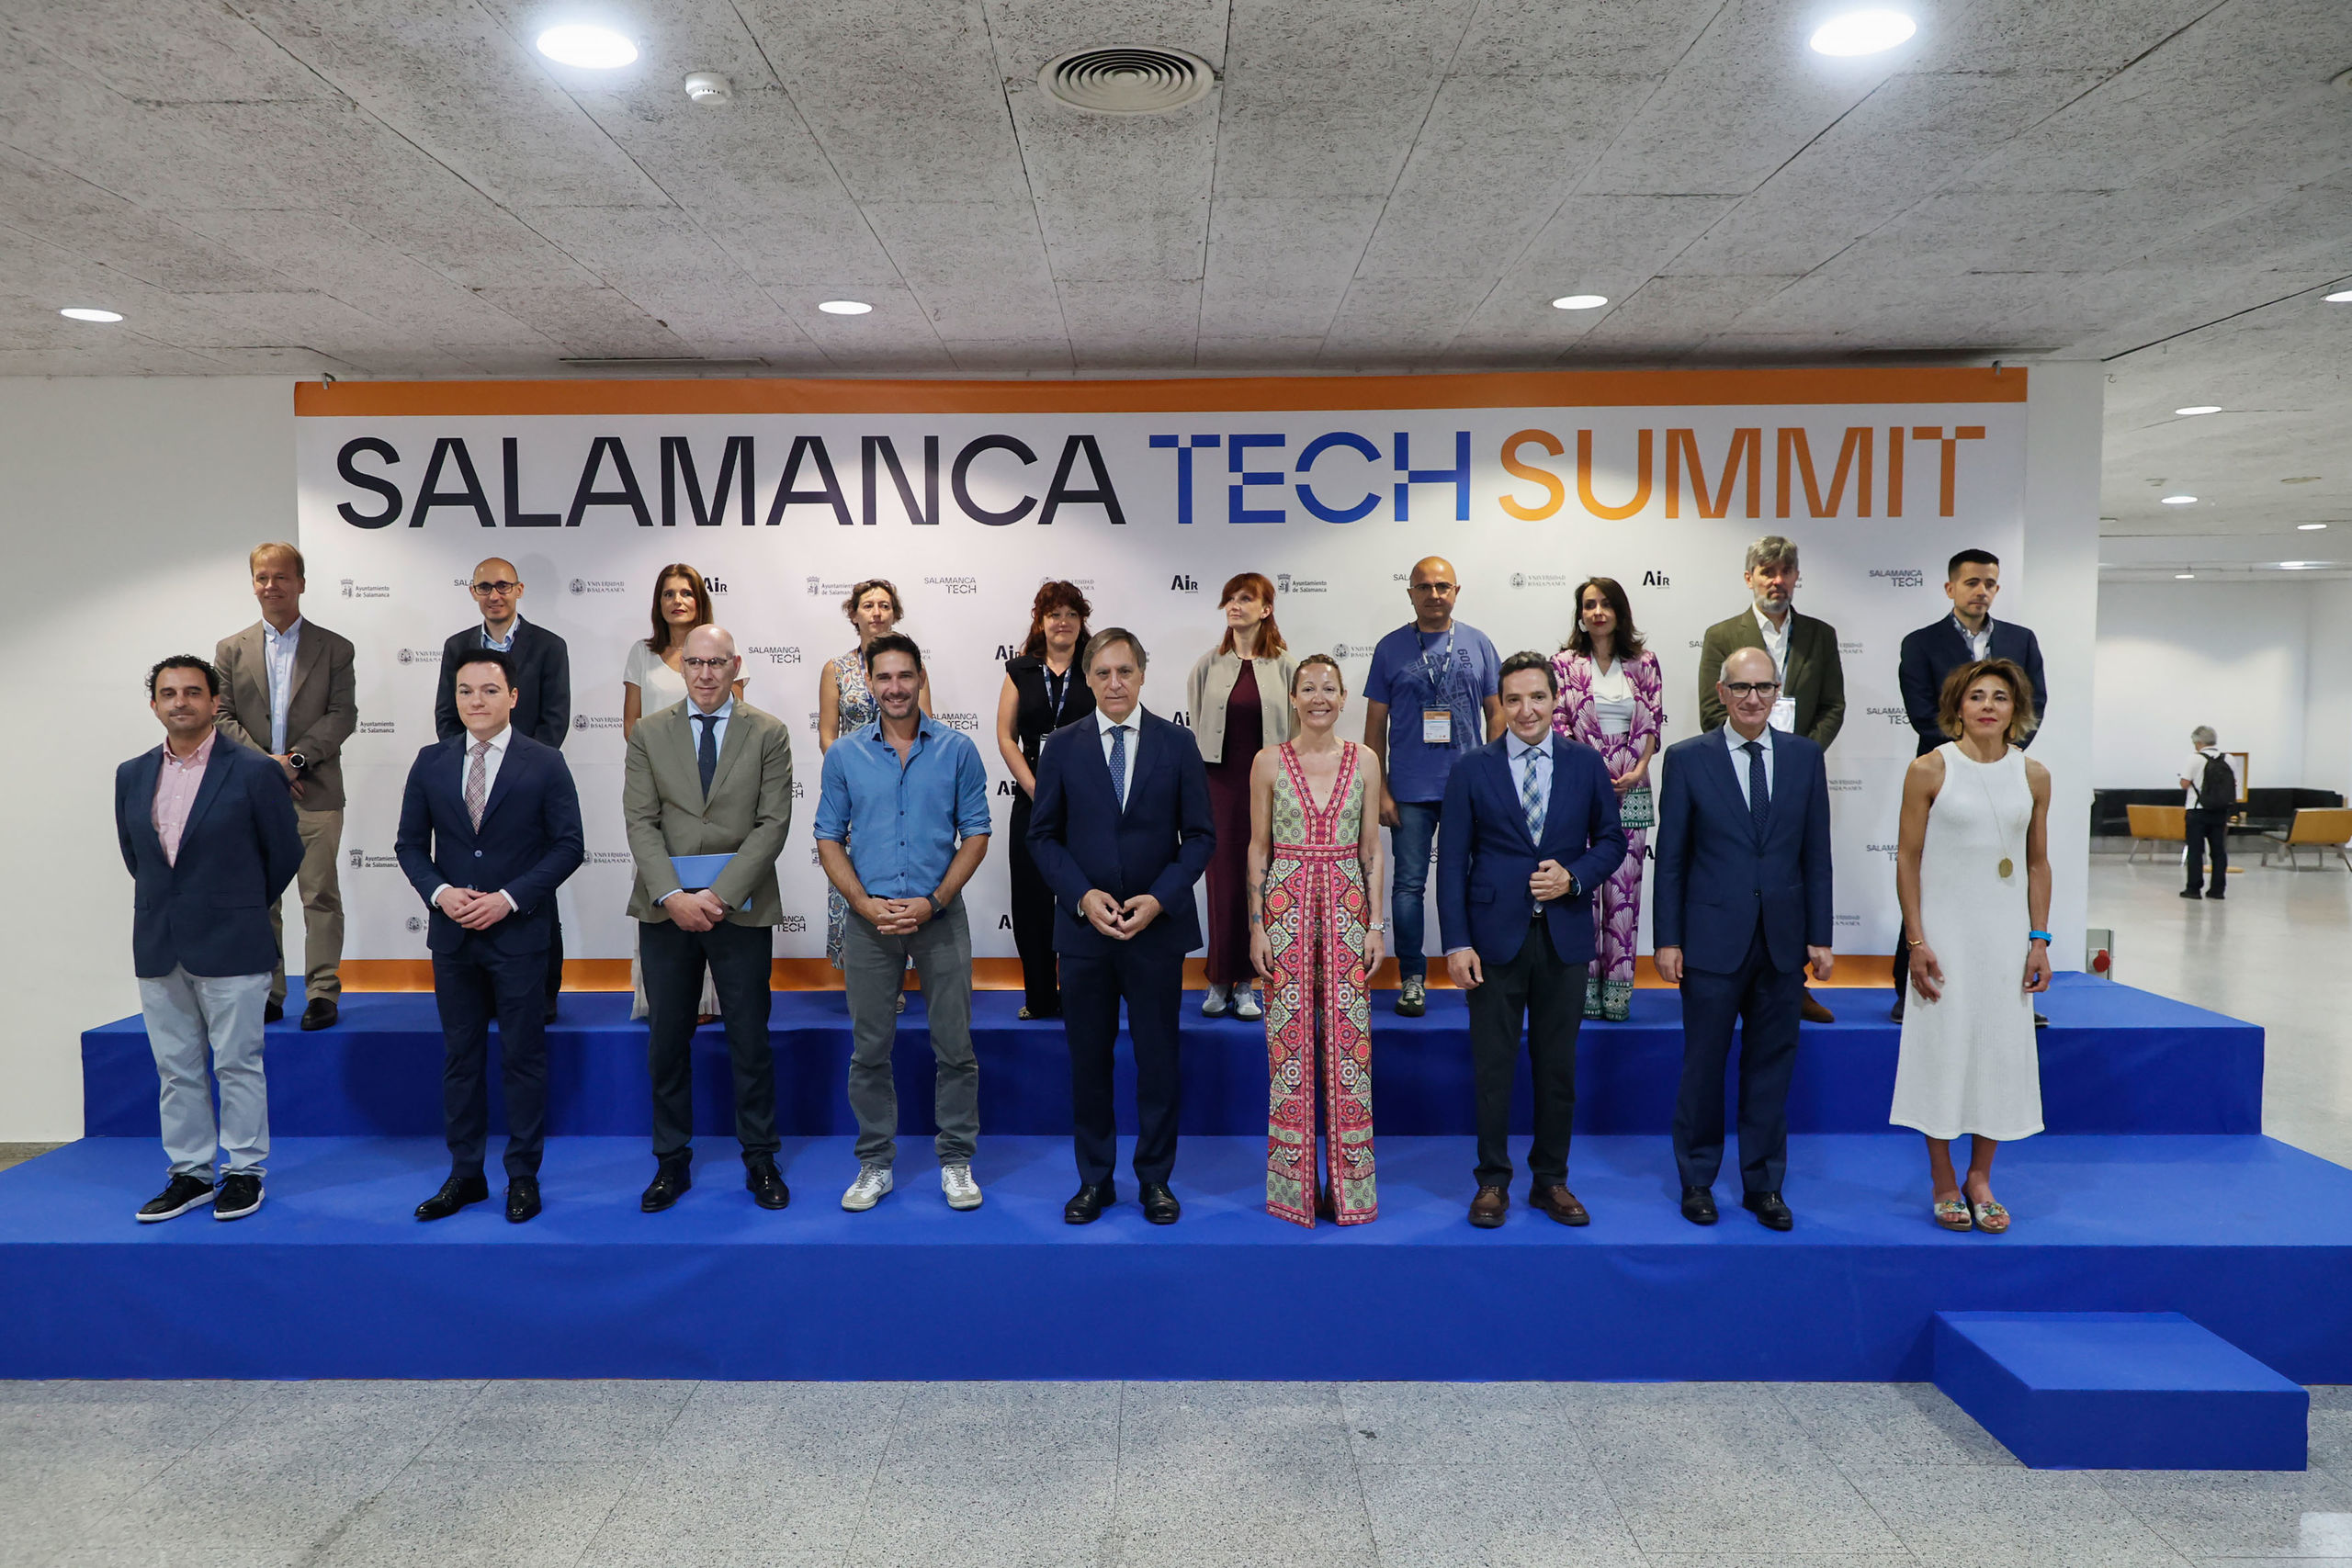 El Salamanca Tech Summit abre el telón con la aspiración de ser un referente nacional en innovación y nuevas tecnologías